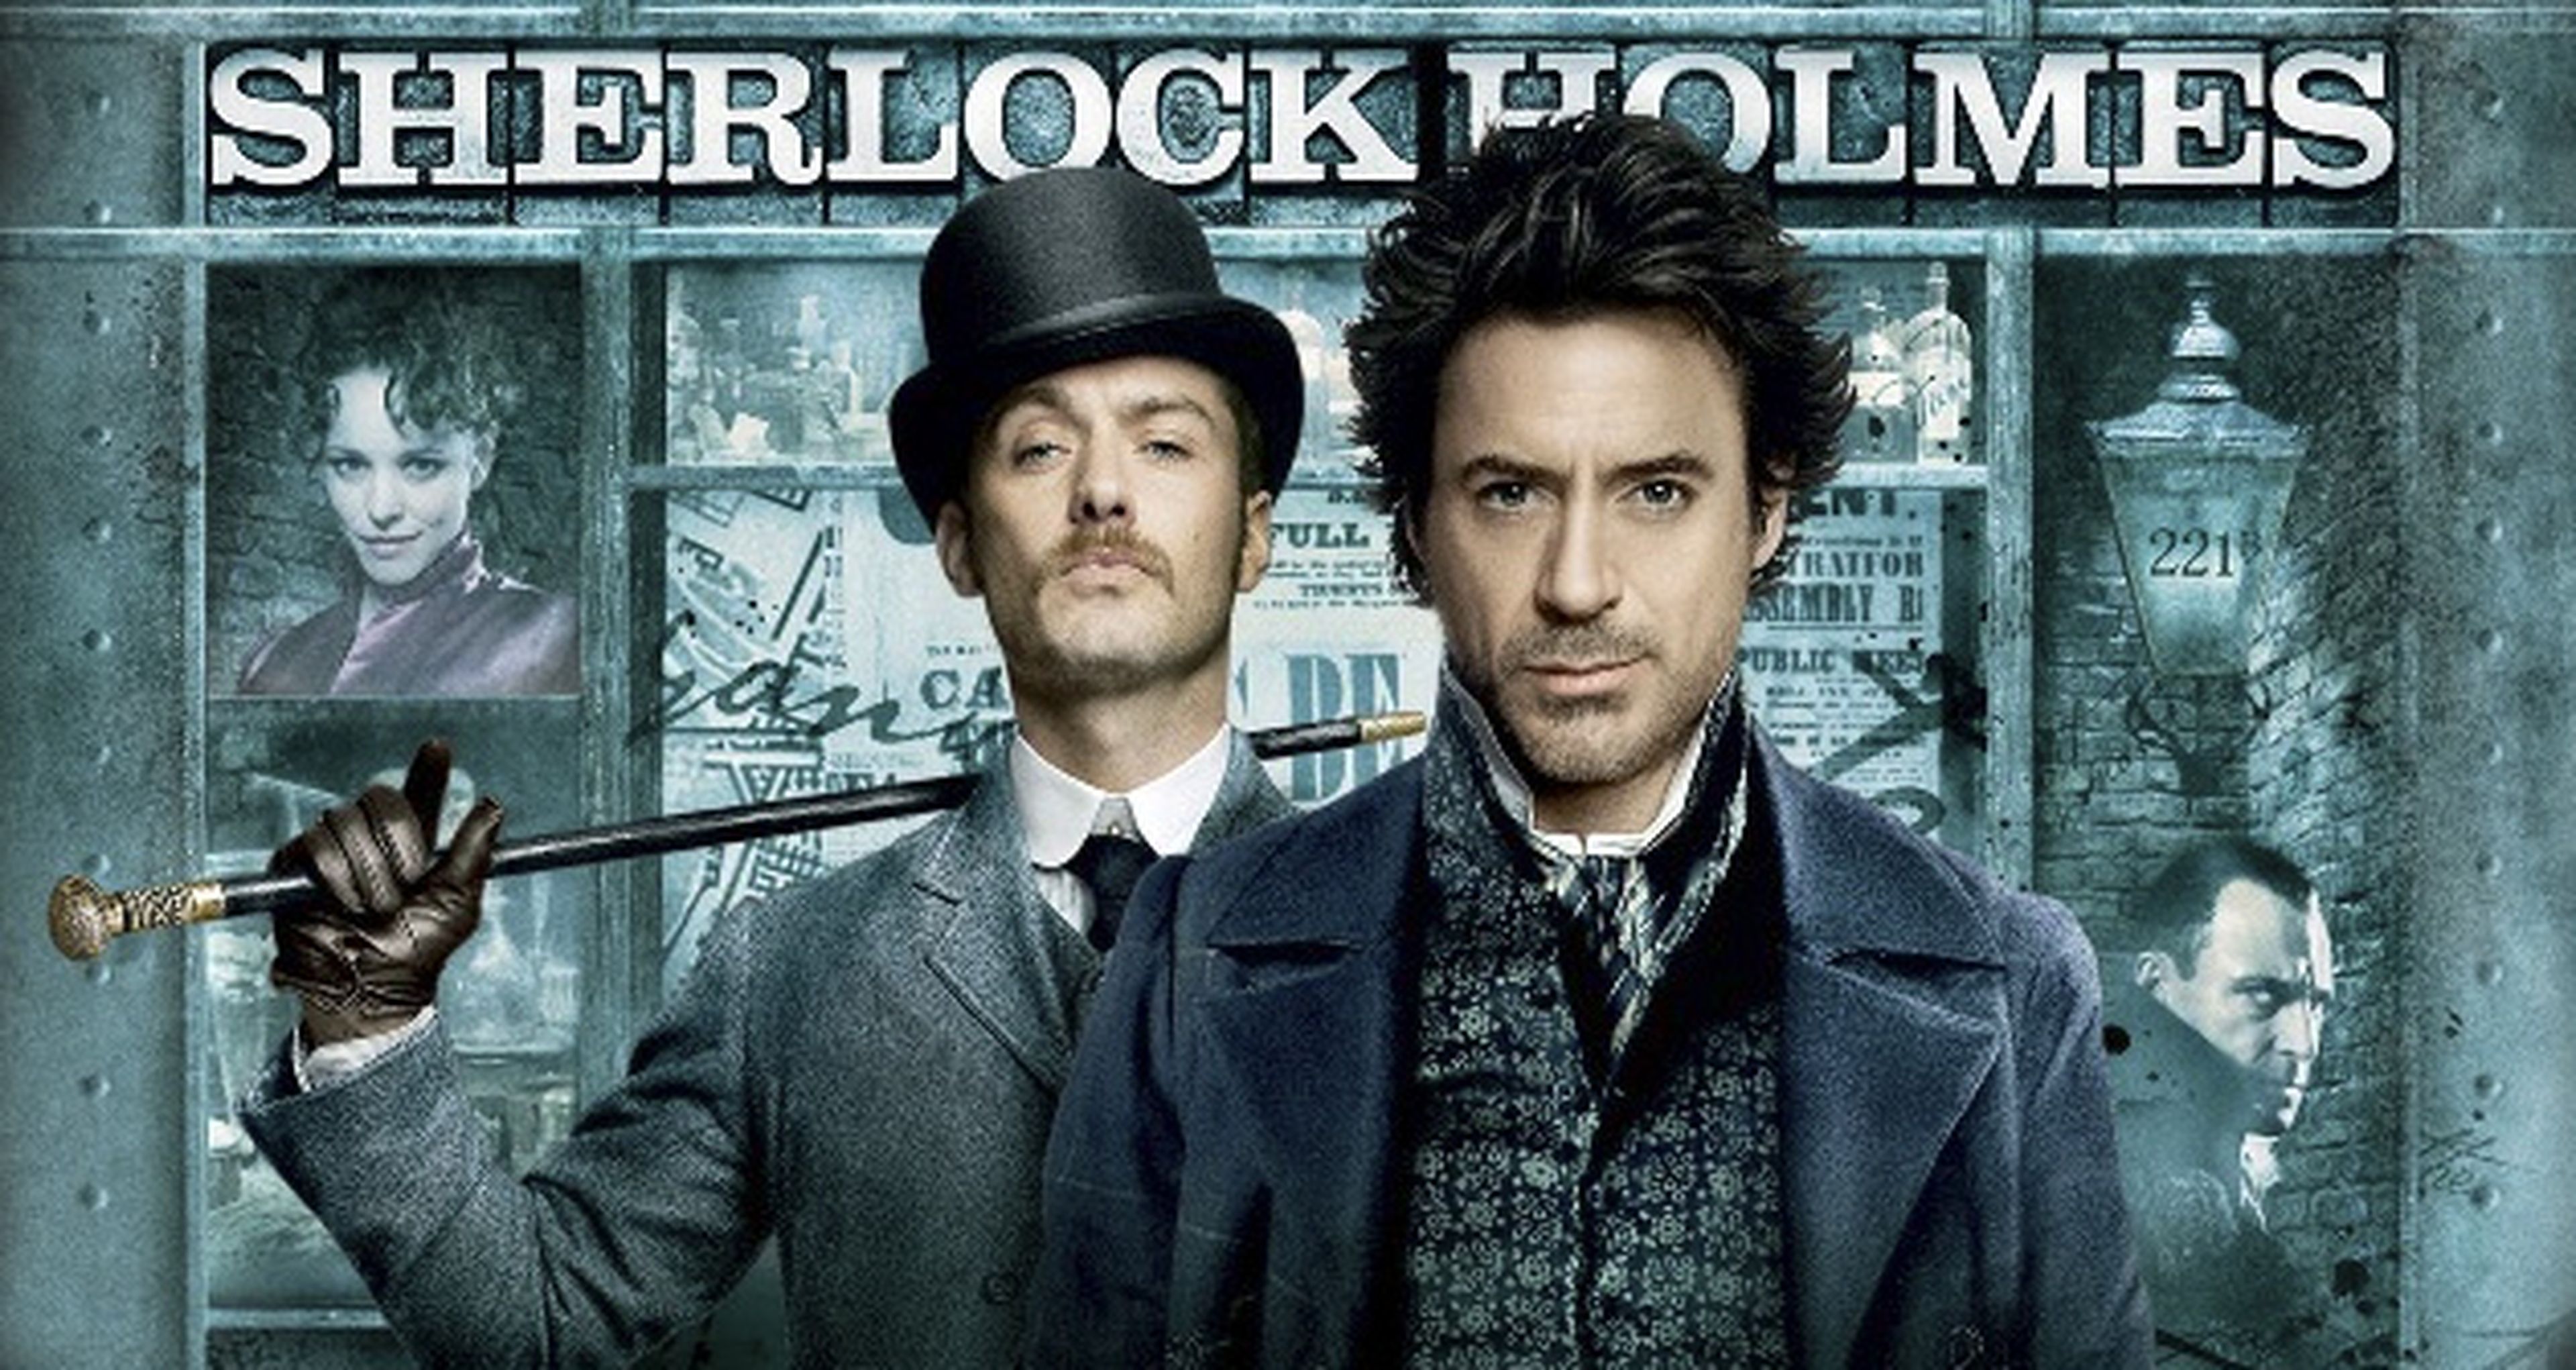 Sherlock Holmes 3 podría rodarse este año según Robert Downey Jr.